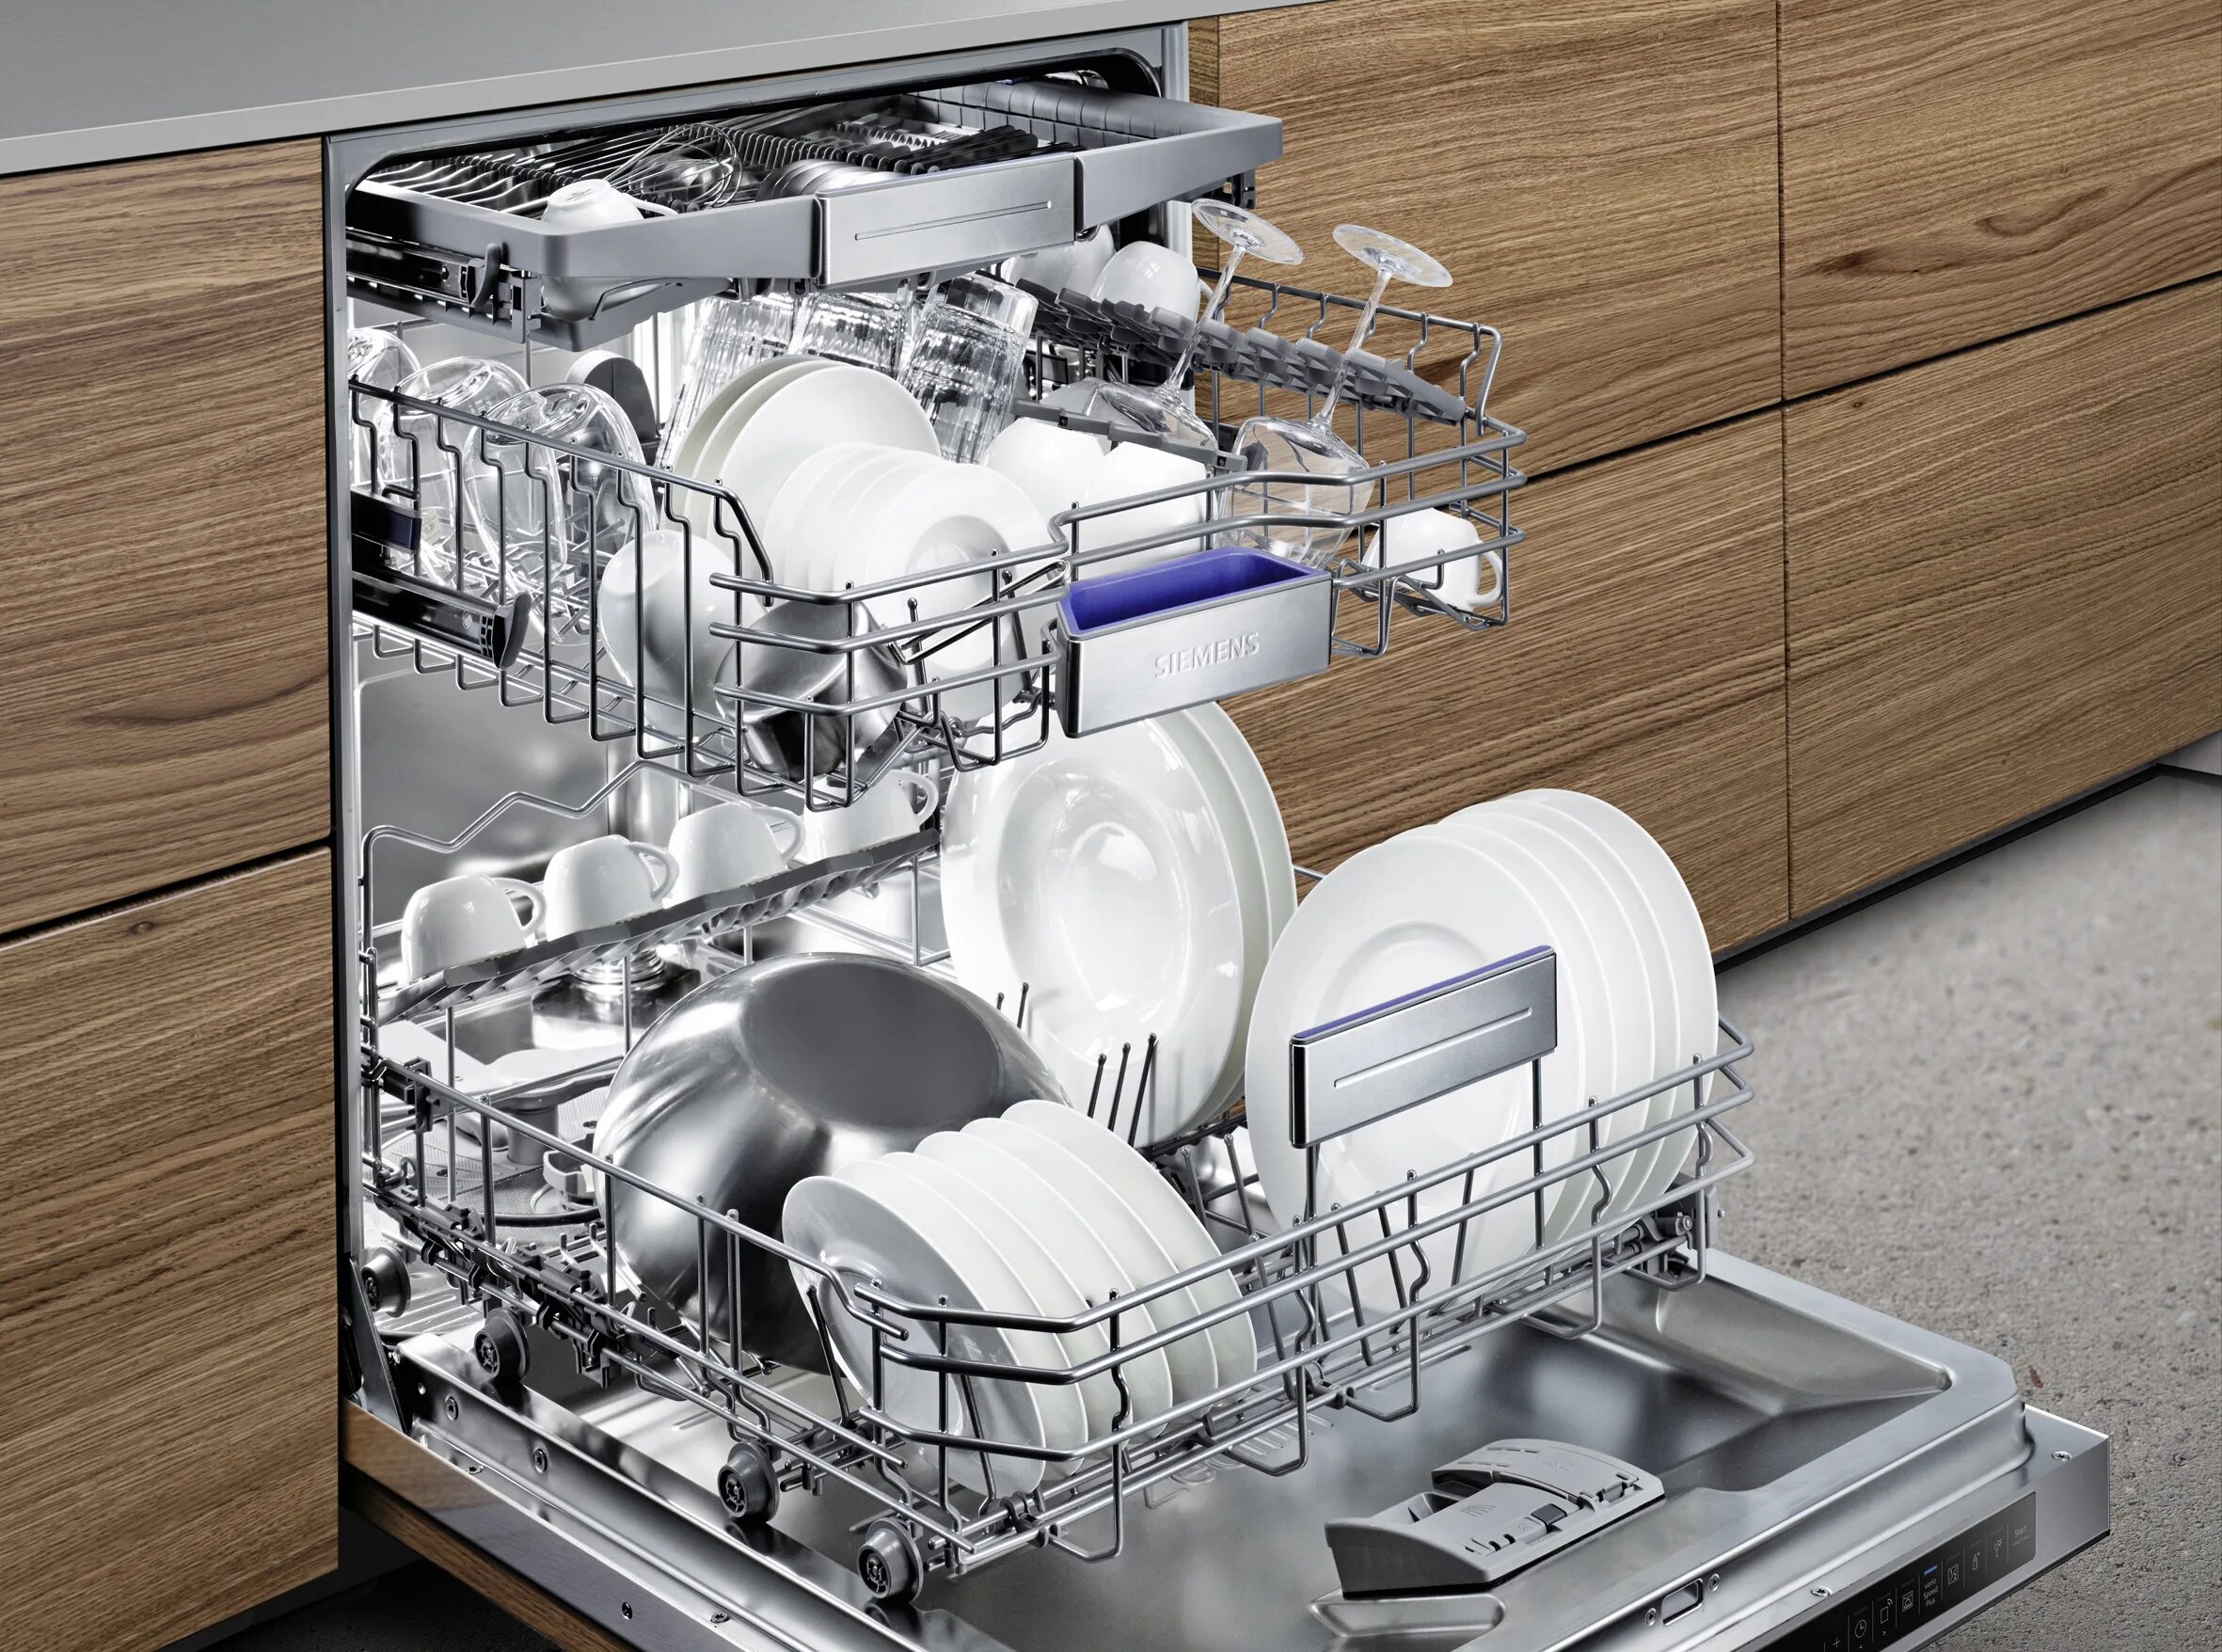 Детали посудомоечной машины. Встраиваемая посудомоечная машина Beko din 14 w13. Siemens iq700. МПТ-1700 посудомоечная машина.